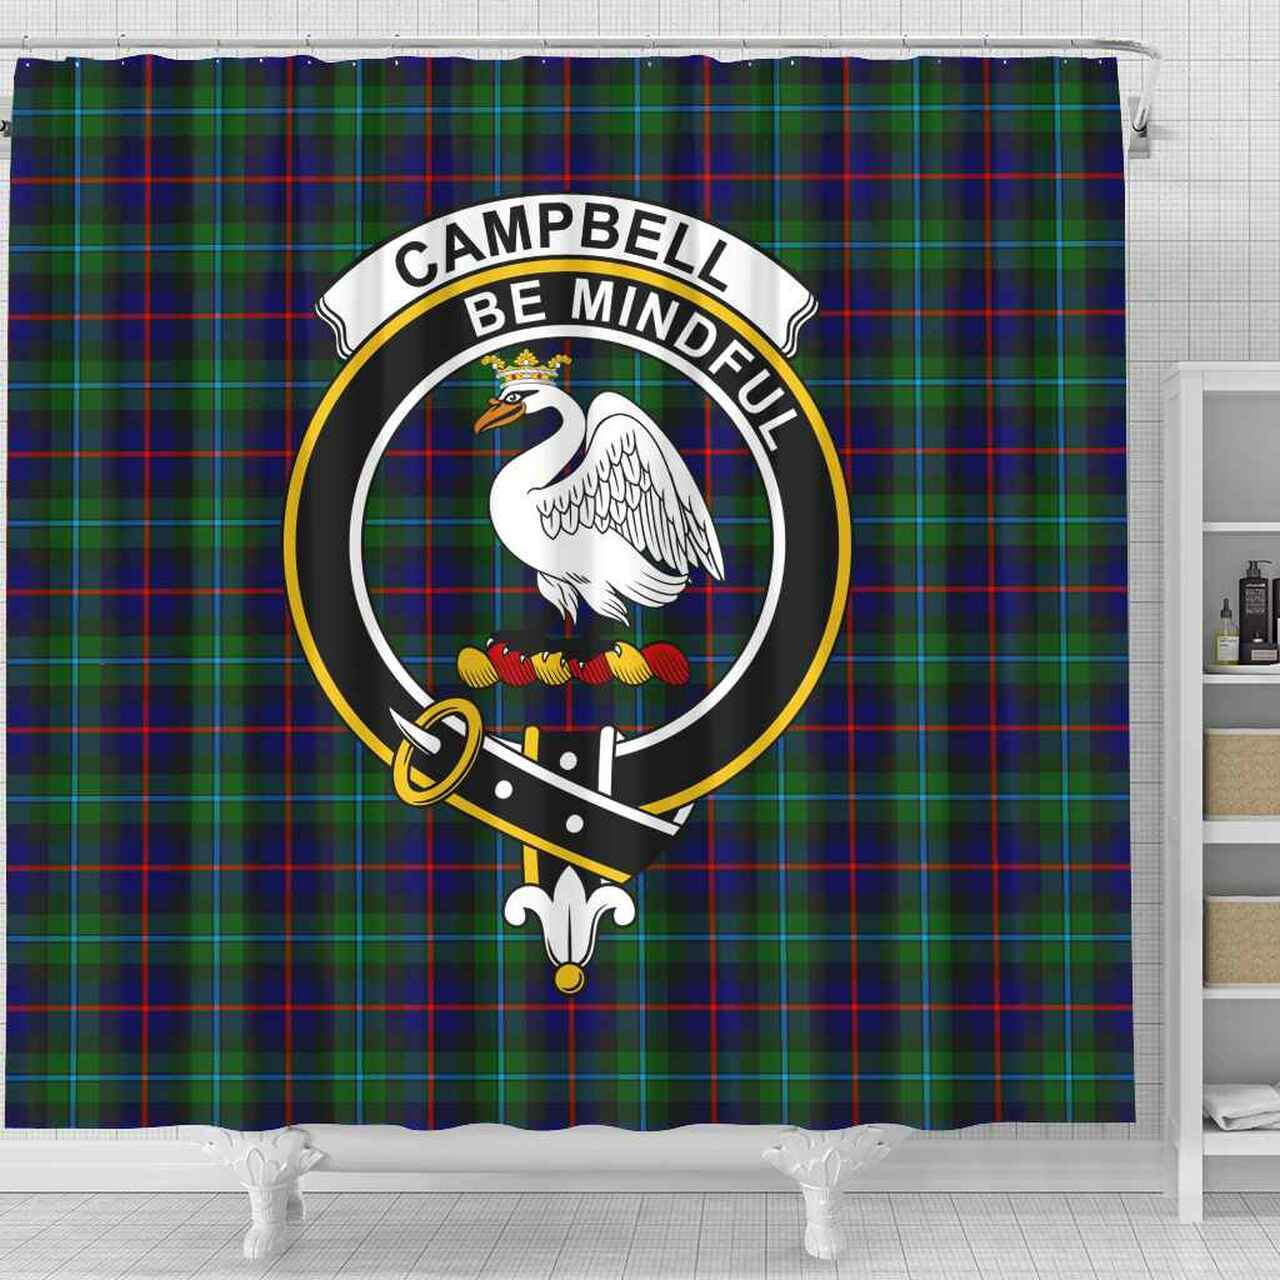 Campbell Tartan Crest Shower Curtain